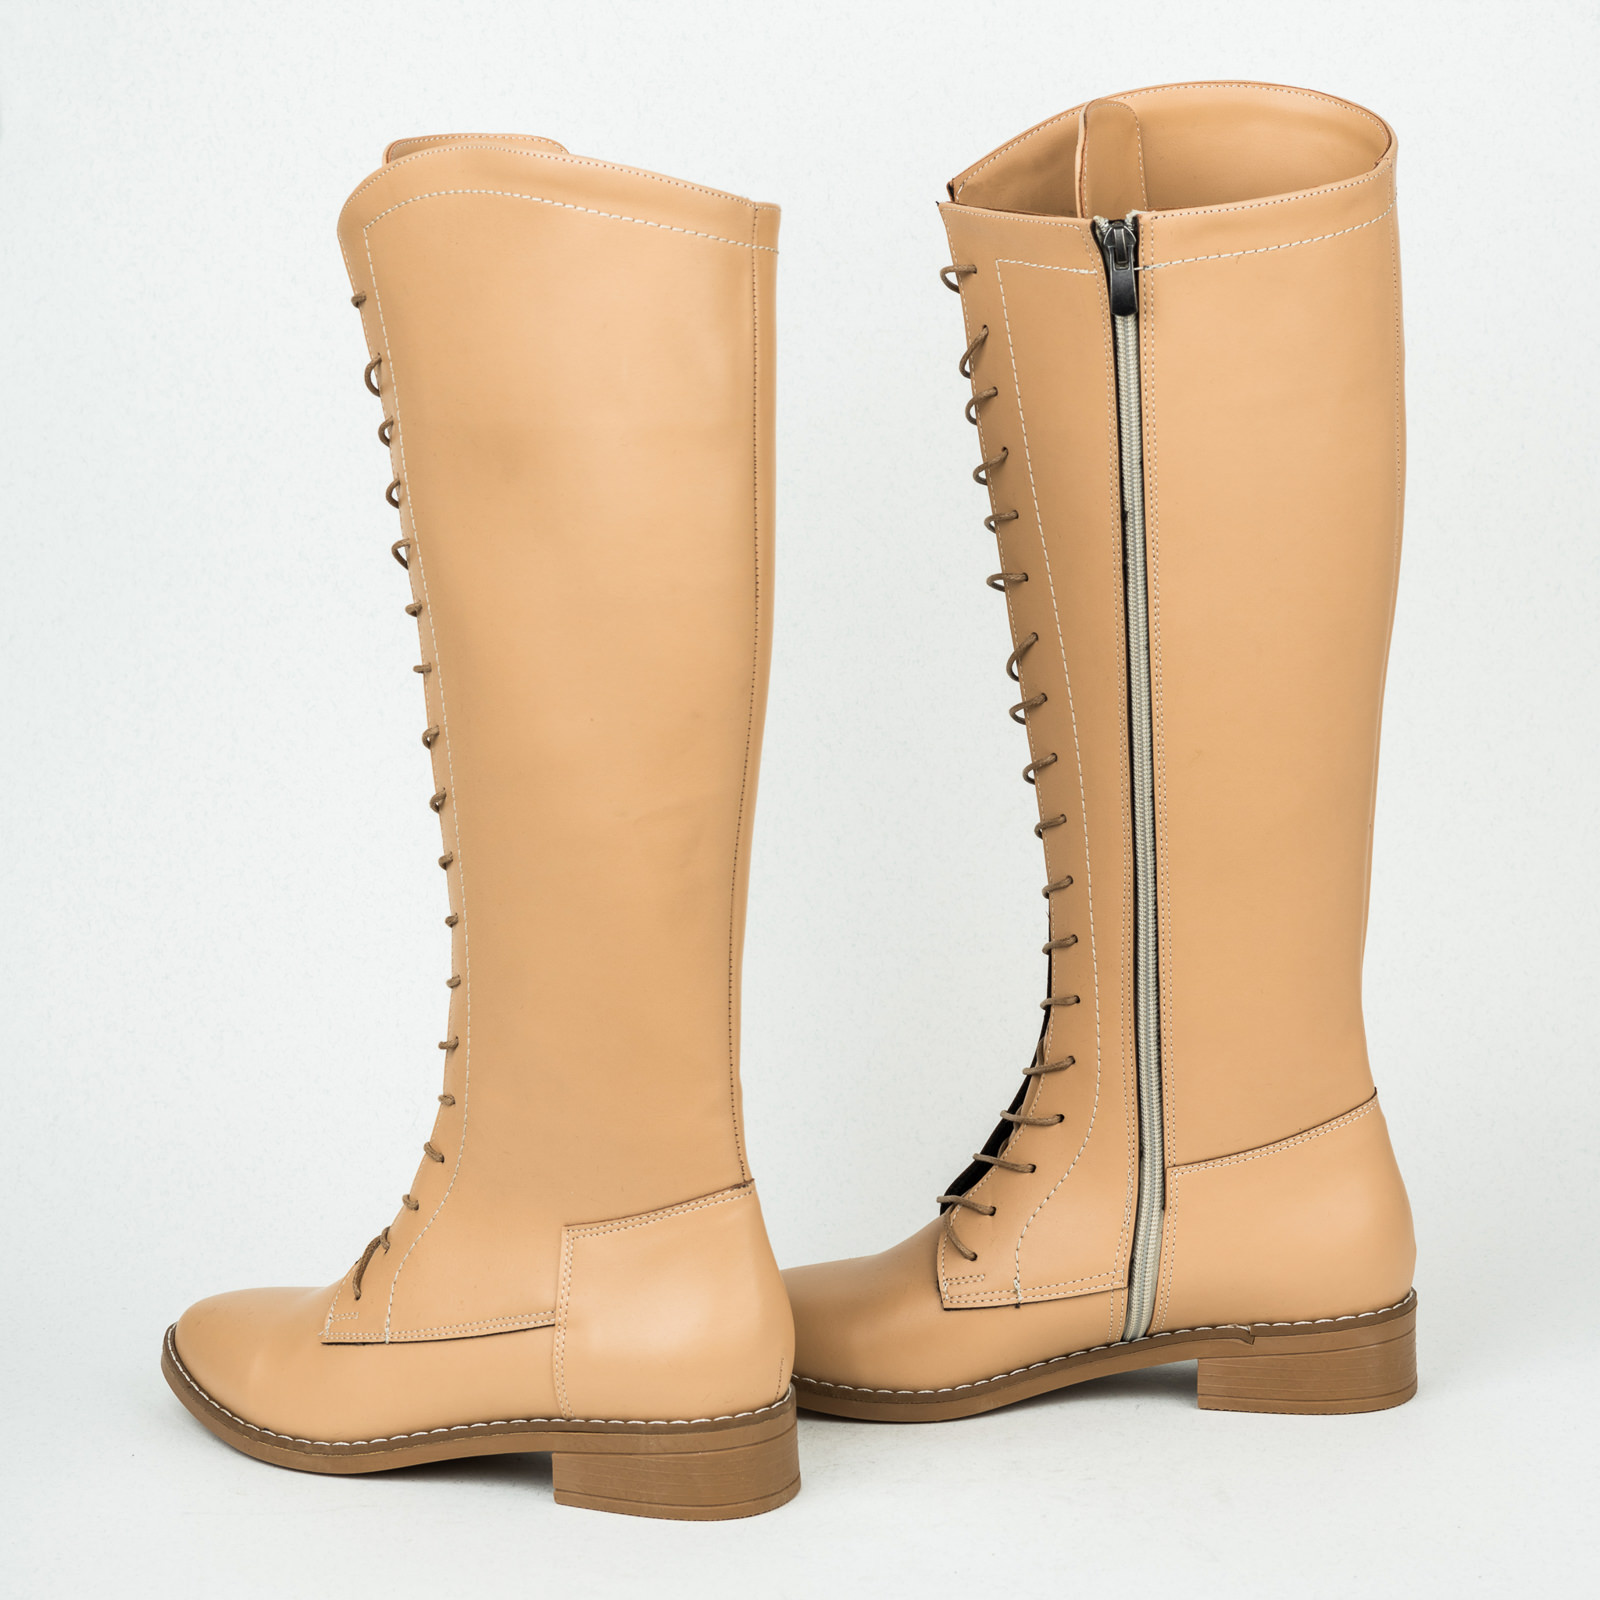 Women boots B141 - BEIGE